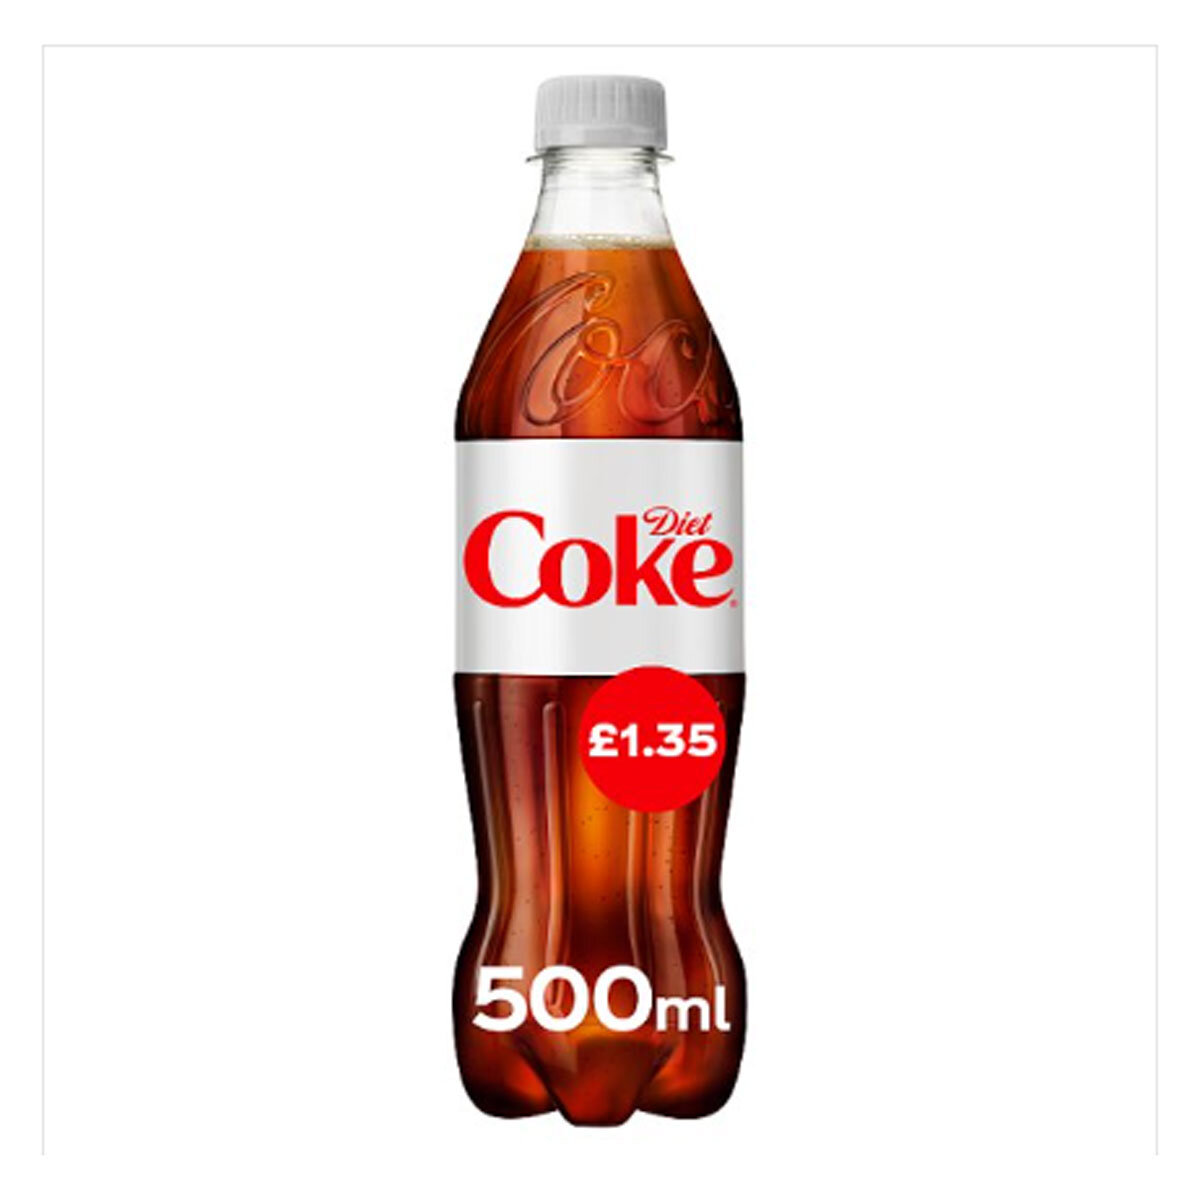 Diet Coke PMP £1.65, 500ml